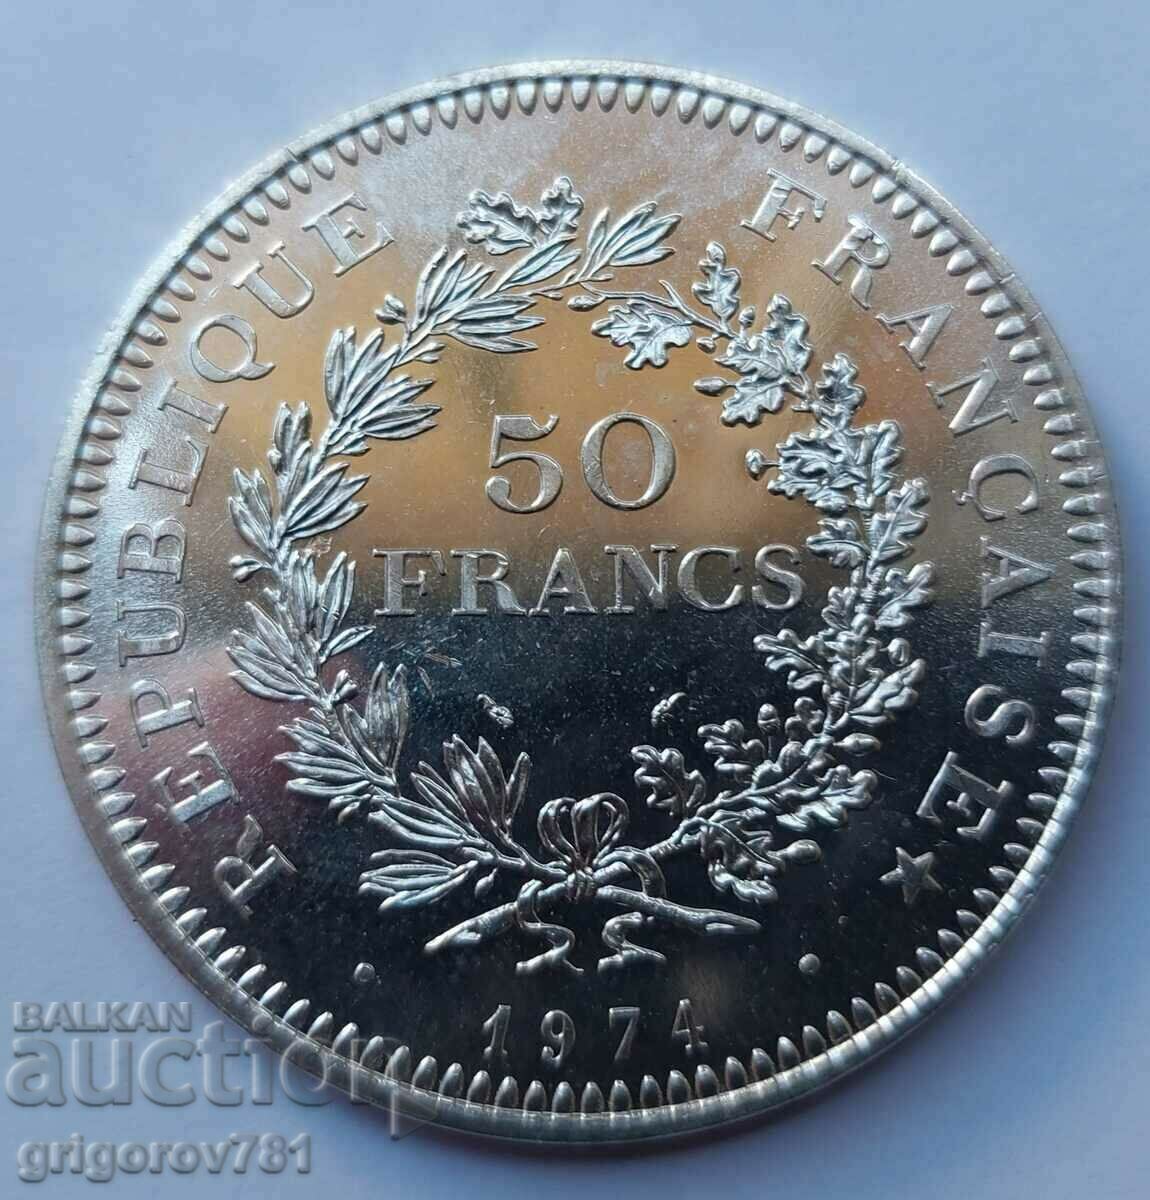 50 Franci Argint Franta 1974 - Moneda de argint #6